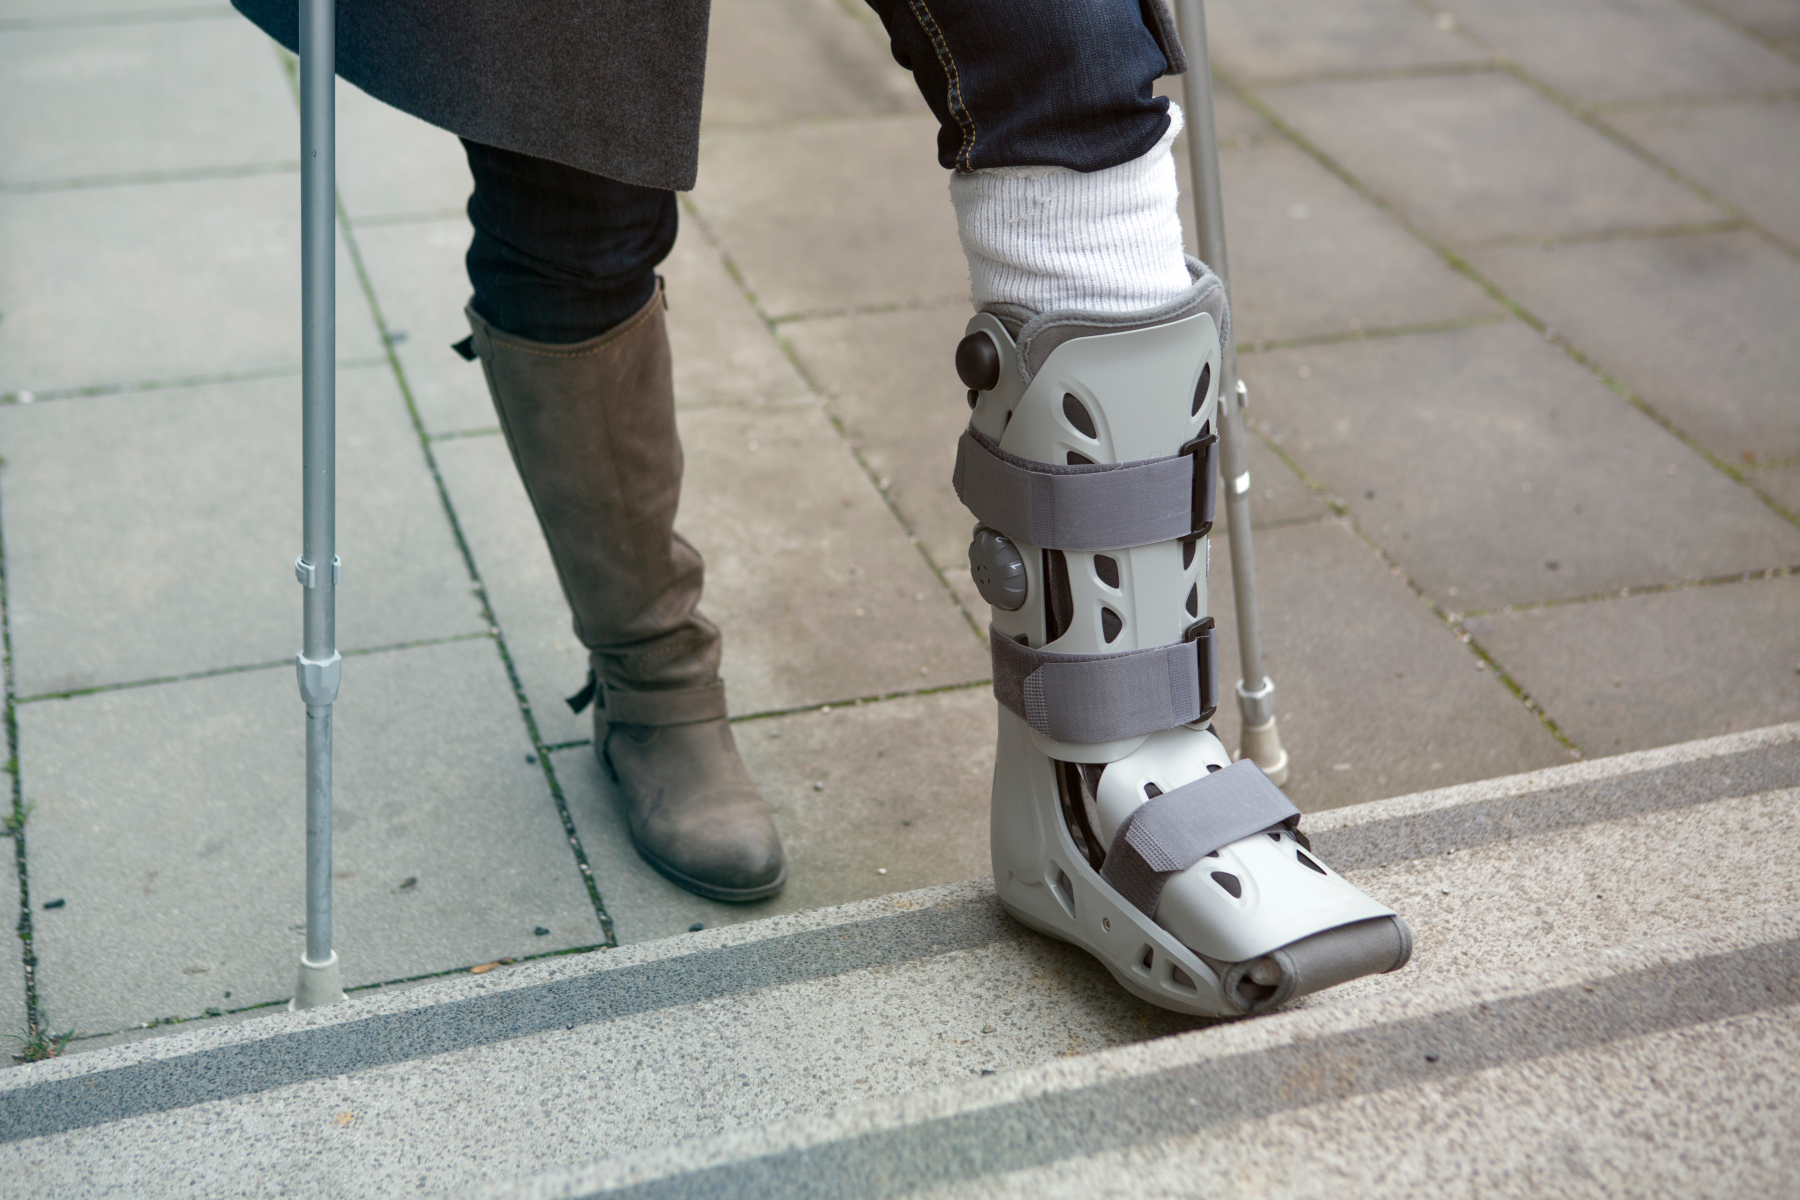 Σπασμένο πόδι: Πώς να φροντίσετε τον εαυτό σας αν έχετε σπάσει το πόδι σας και ζείτε μόνοι;